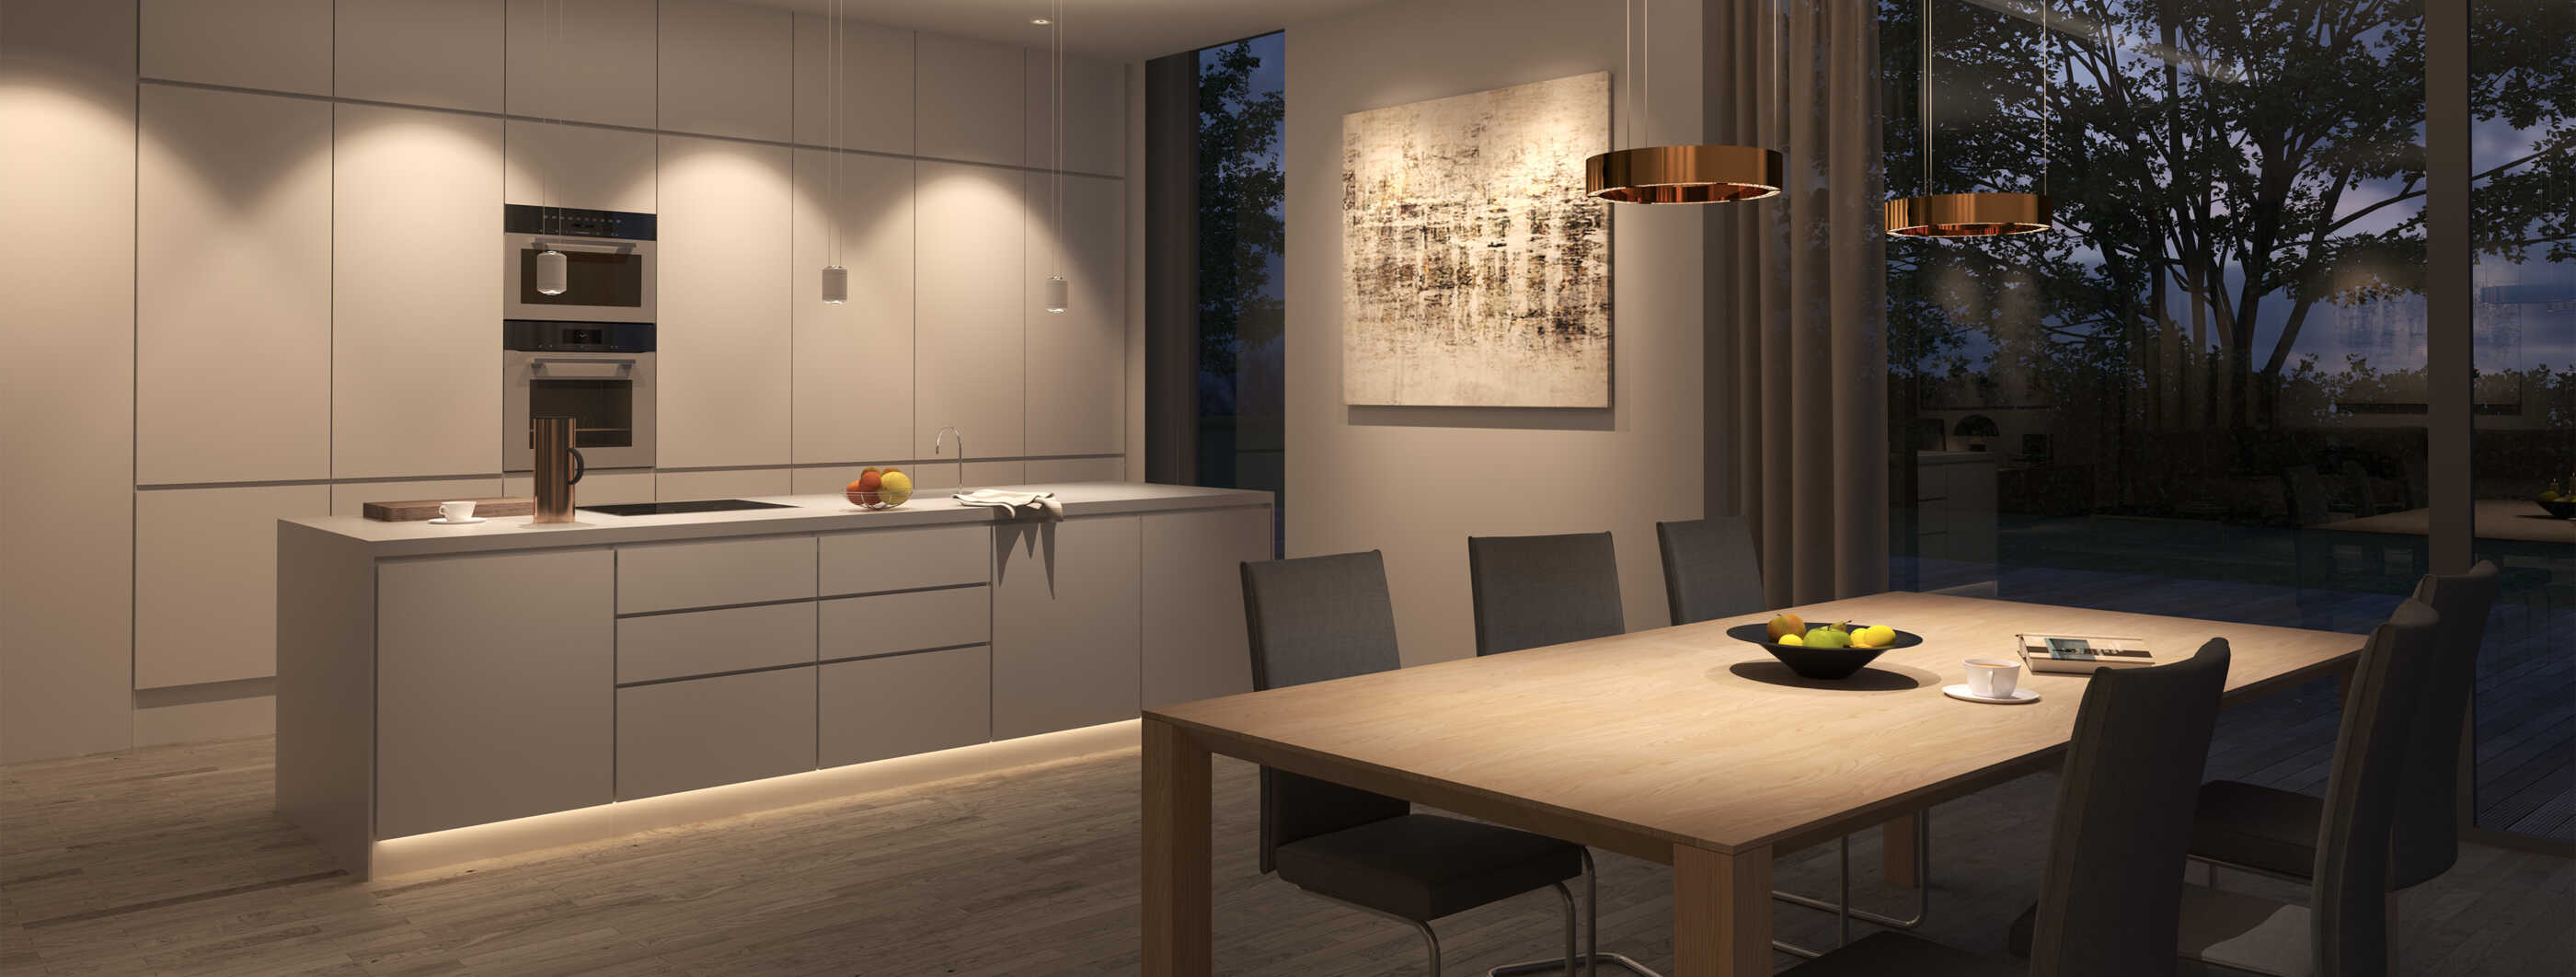 Eine moderne, offene Küche mit zentralem Tresen als Arbeitsfläche, im Vordergrund ist der Esstisch zu sehen. Downlights beleuchten die Küchenschränke, eine Lichtleiste dient der Sockelbeleuchtung des Tresens.